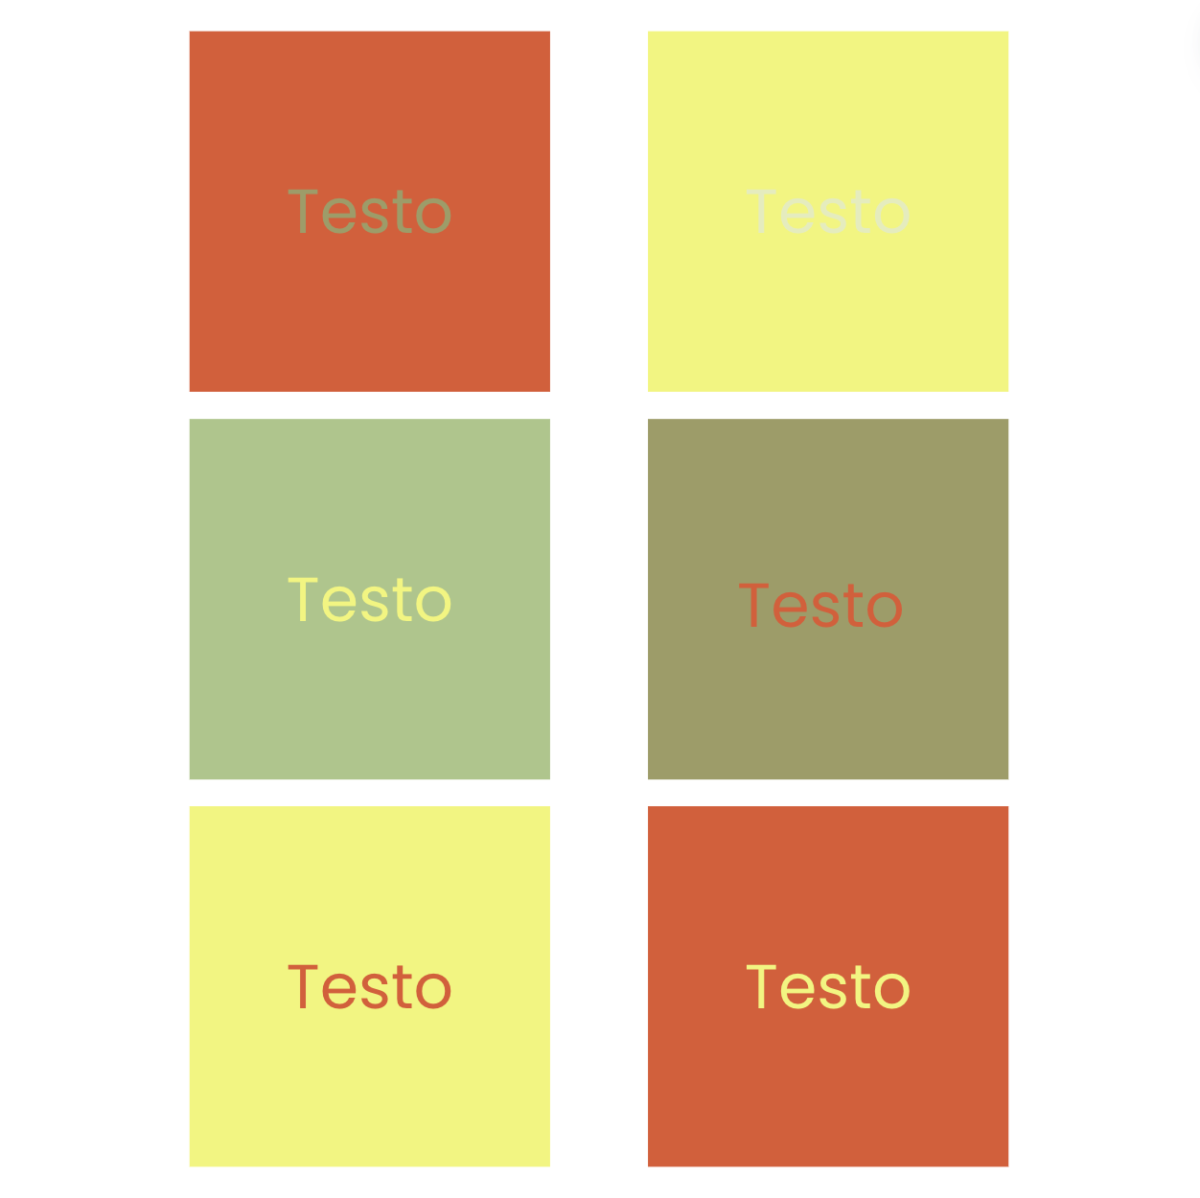 Quadrati di colore e testi sovrapposti di colori a contrasto per provare come alcune scritte si leggano meglio o peggio a seconda del colore di sfondo